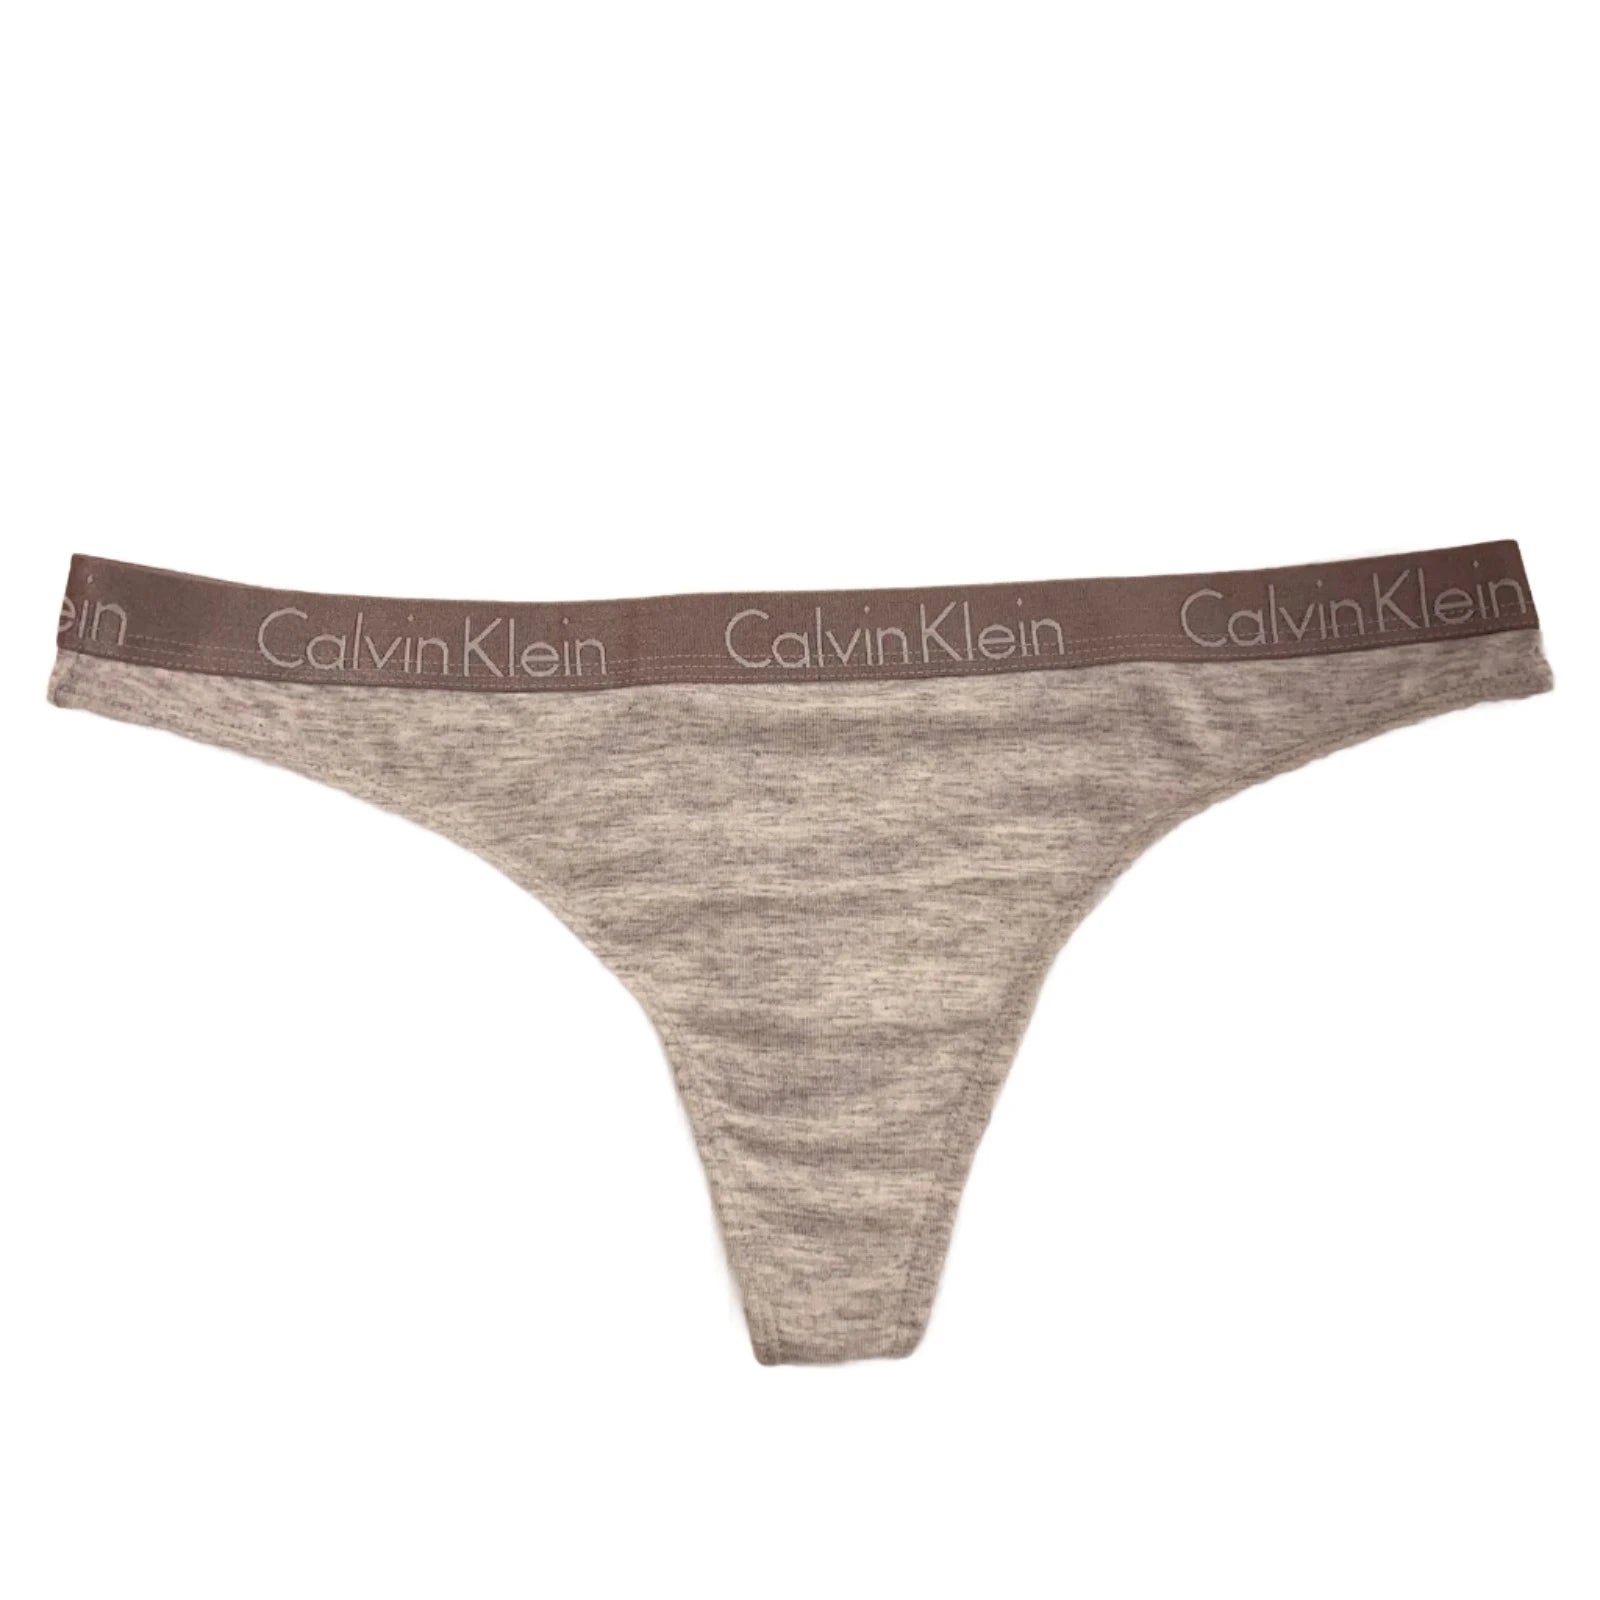 Calvin Klein Women's Cotton Thong